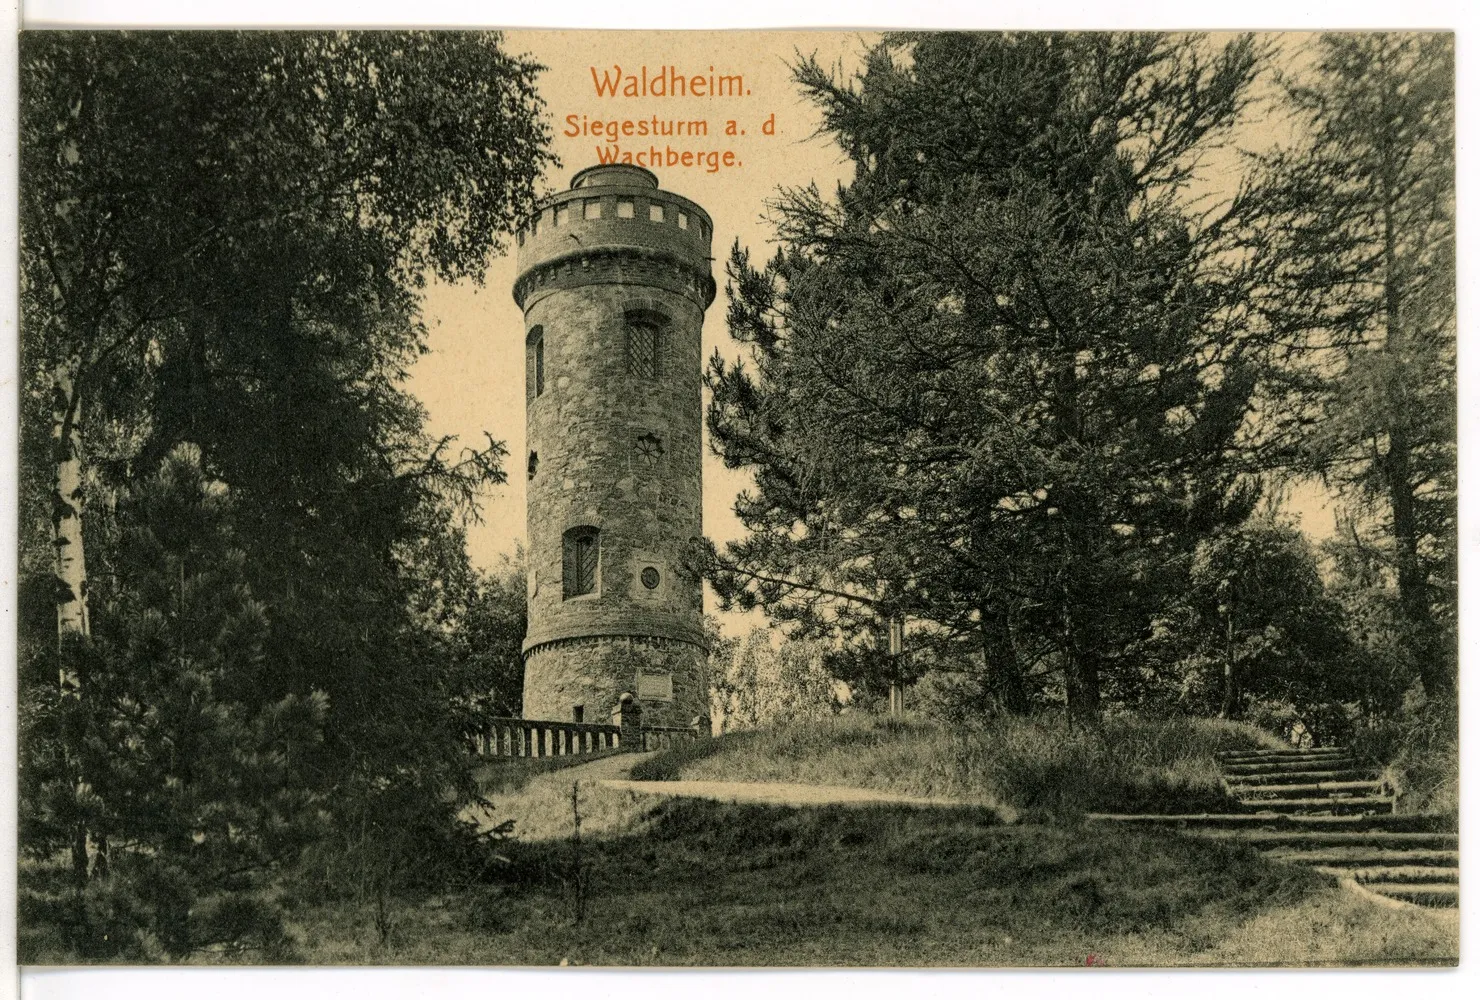 Photo showing: Waldheim; Siegesturm auf dem Wachberge